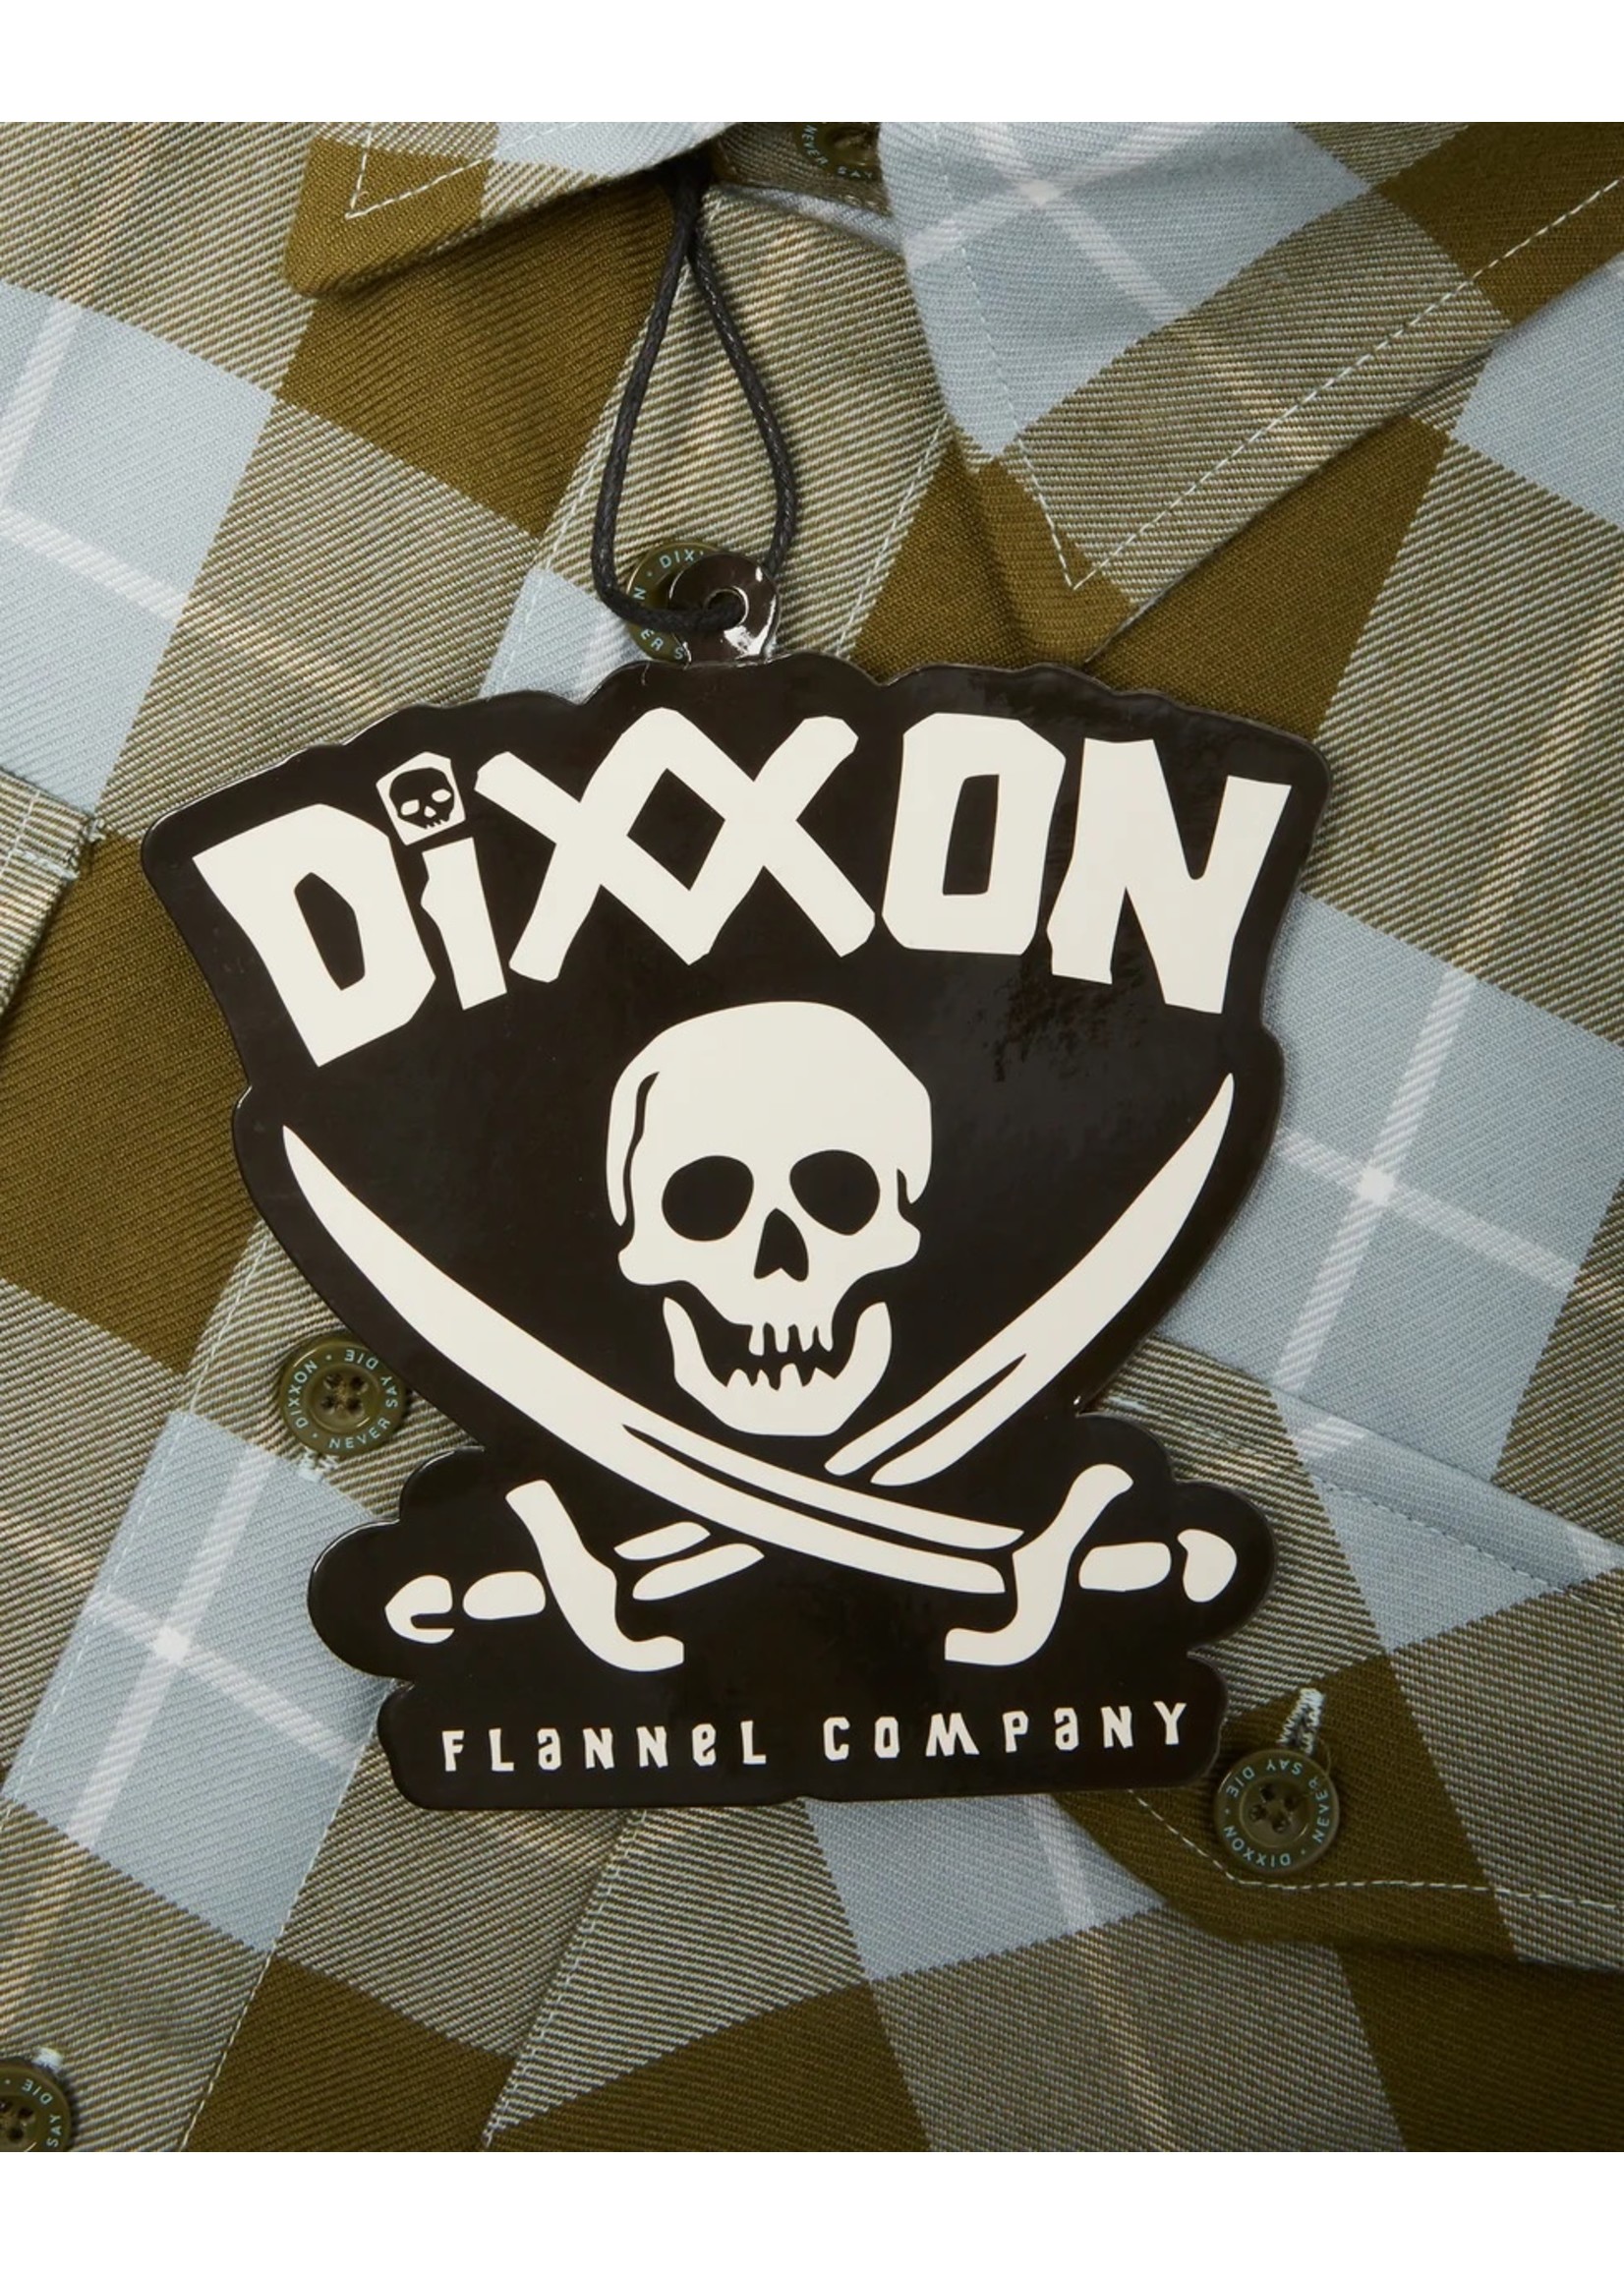 Dixxon Dixxon - Tall Astoria Flannel